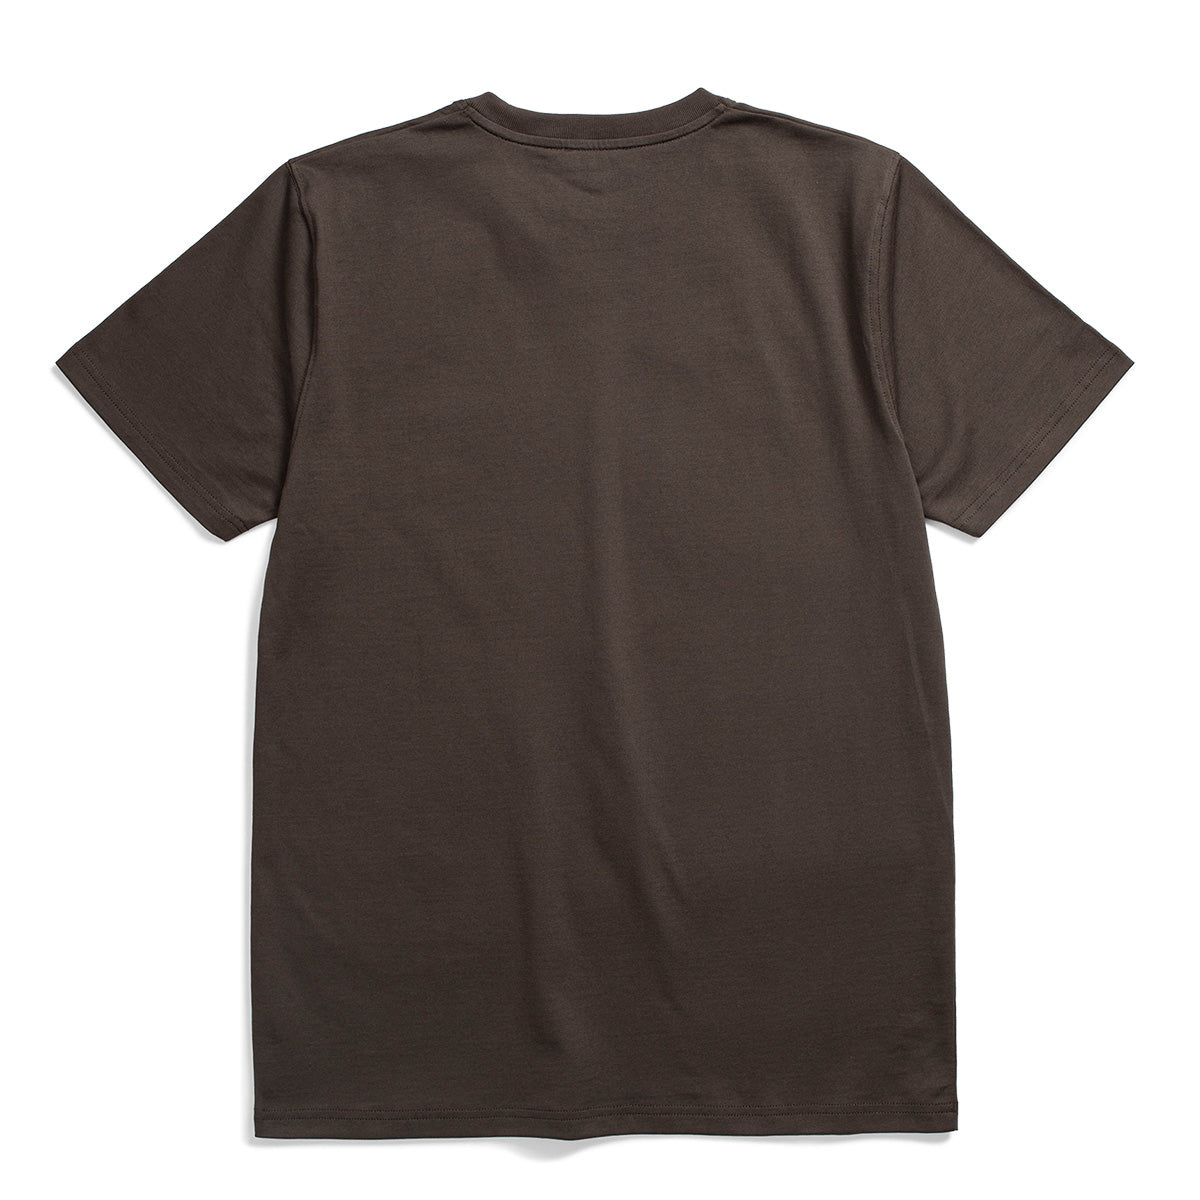 Niels Standard T-Shirt - Beech Green